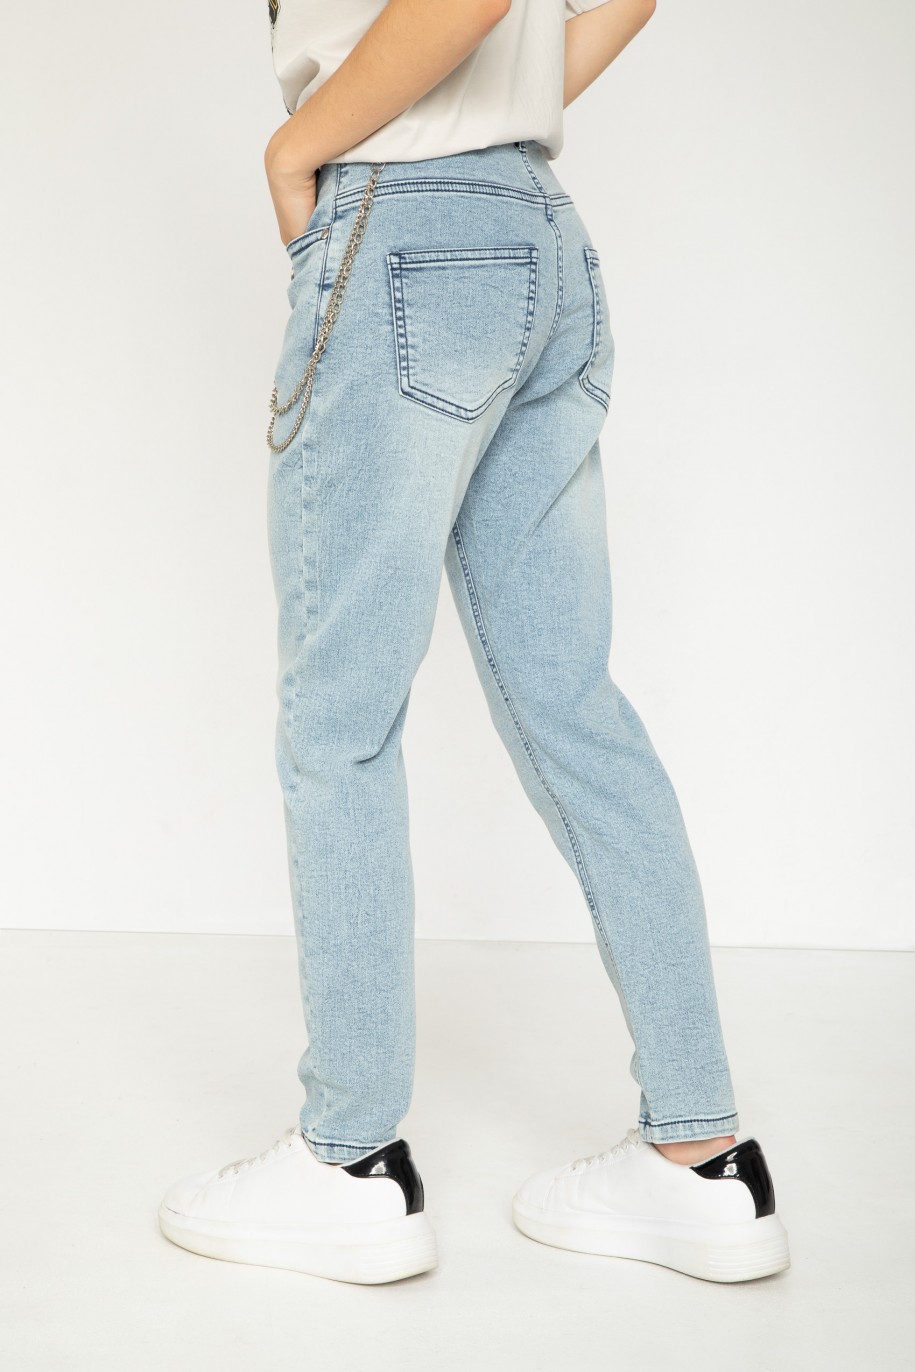 Niebieskie jeansowe spodnie typu BAGGY - 43800